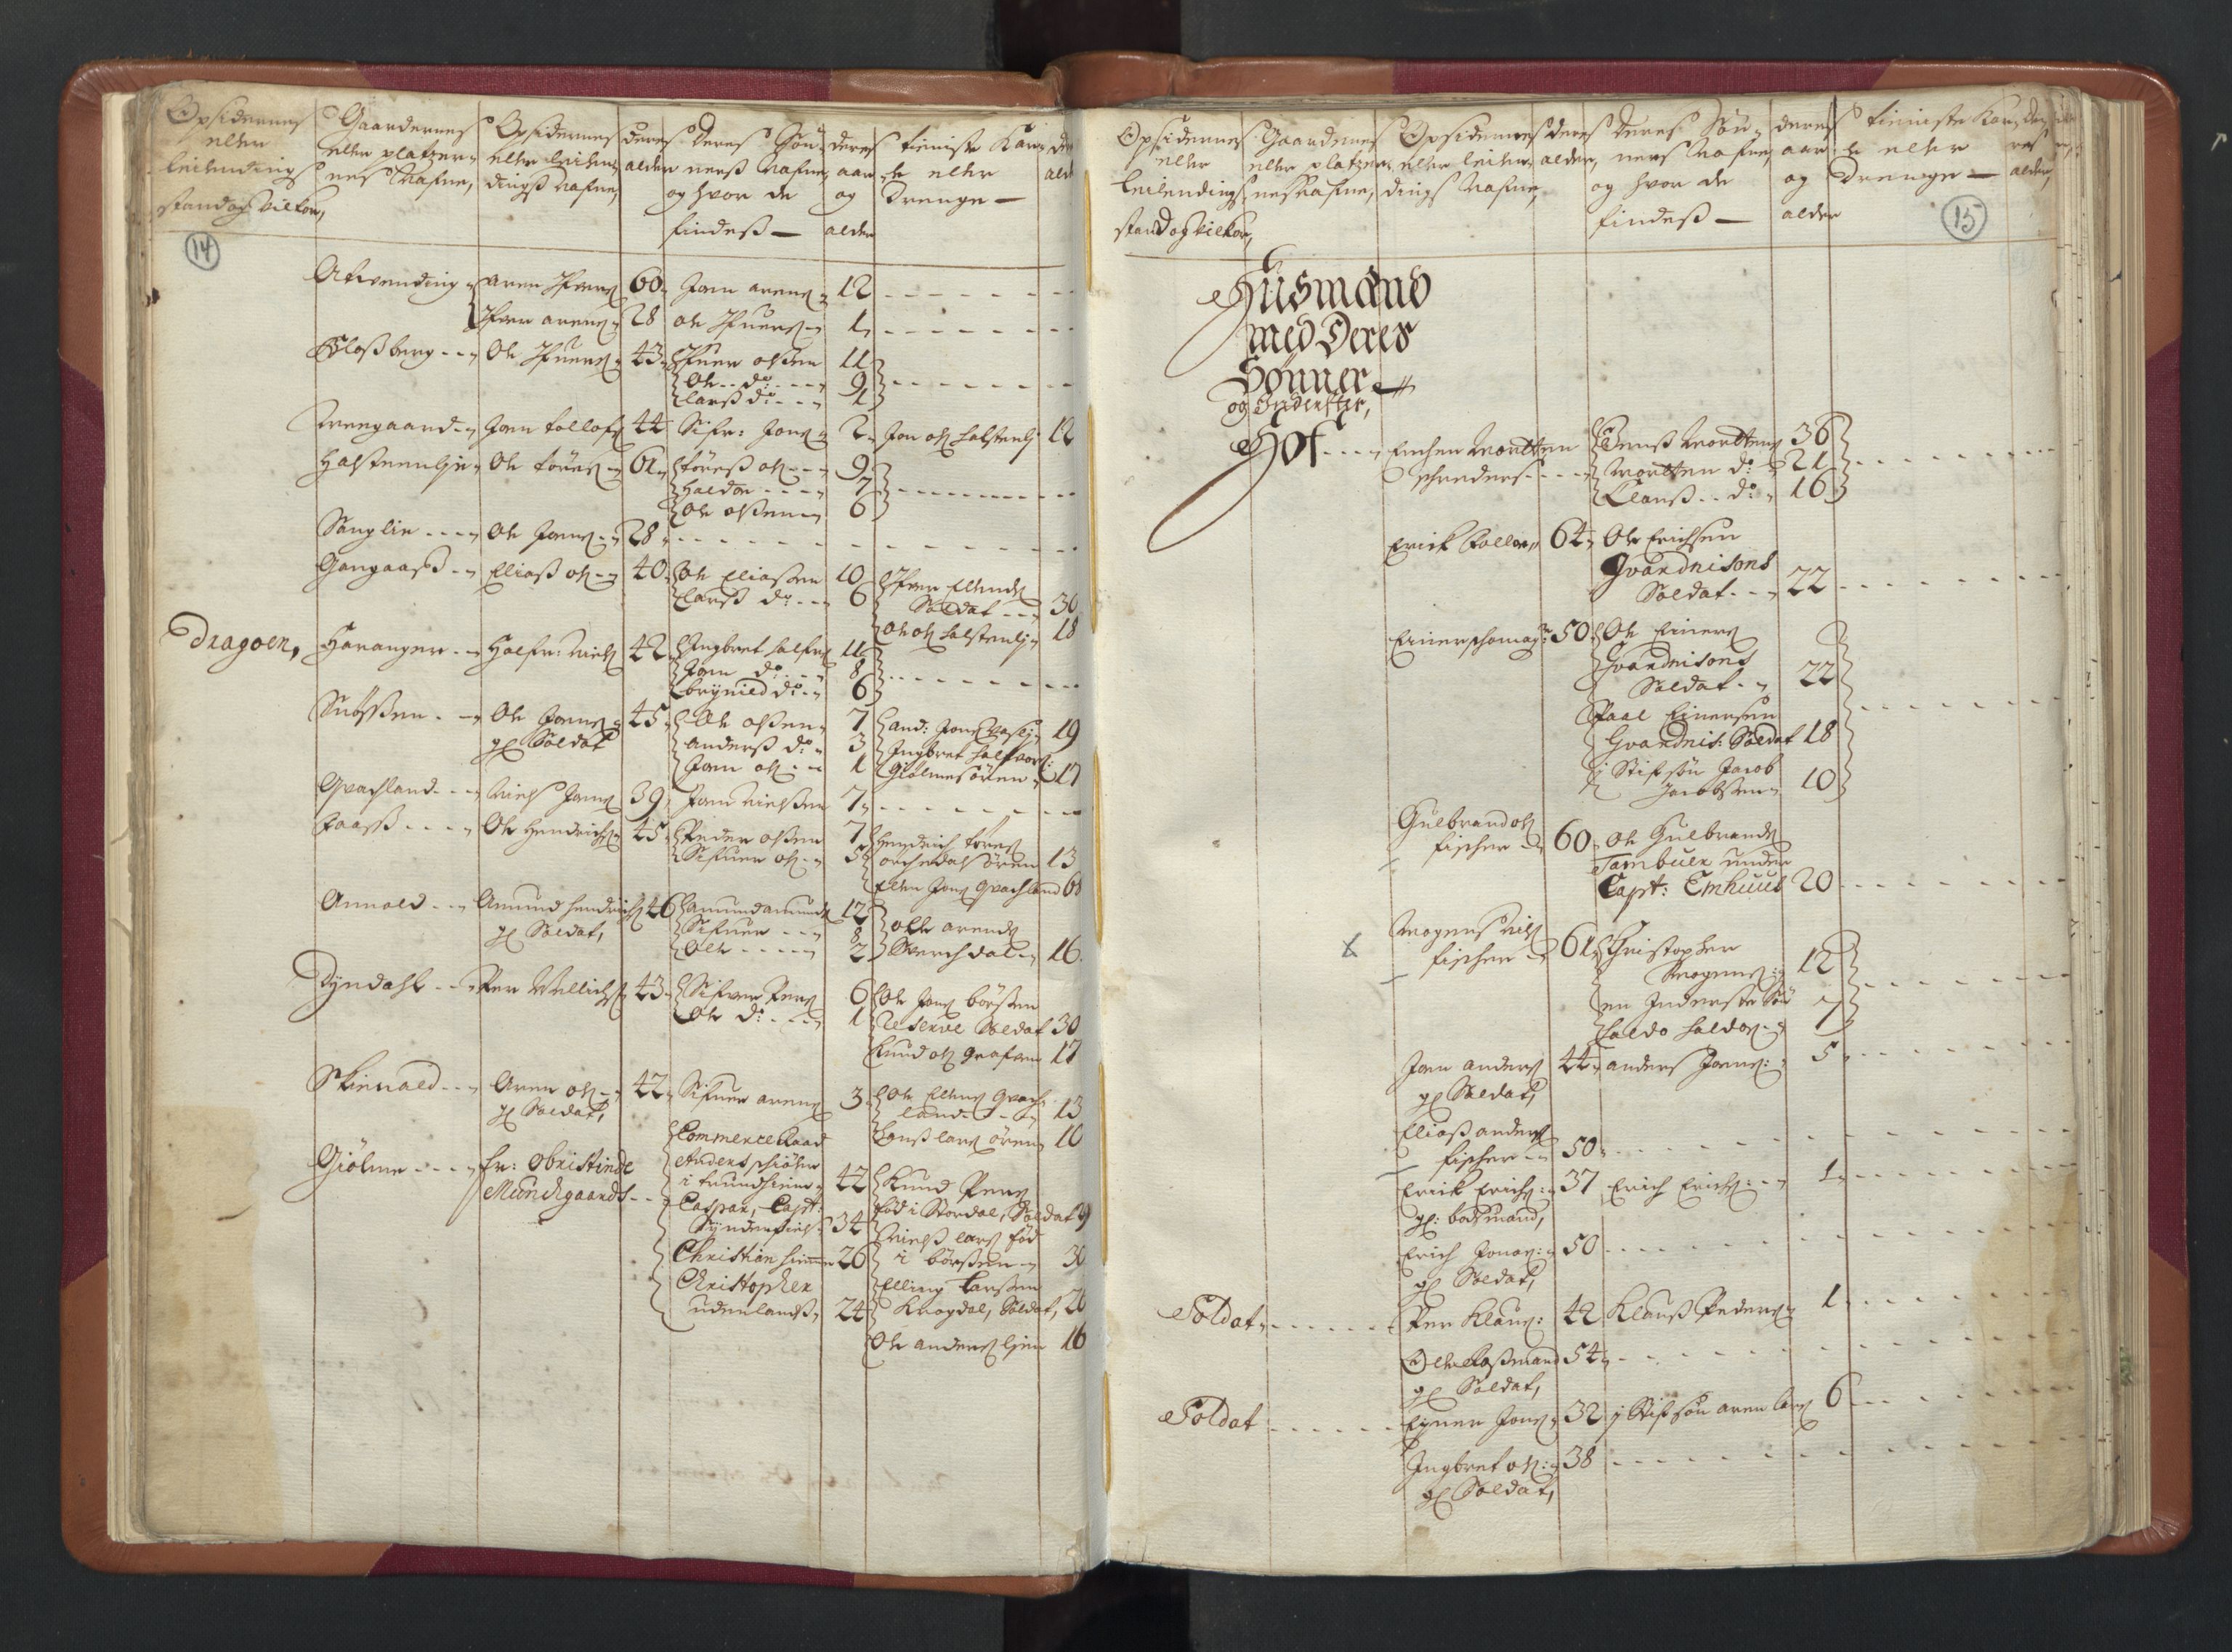 RA, Manntallet 1701, nr. 13: Orkdal fogderi og Gauldal fogderi med Røros kobberverk, 1701, s. 14-15